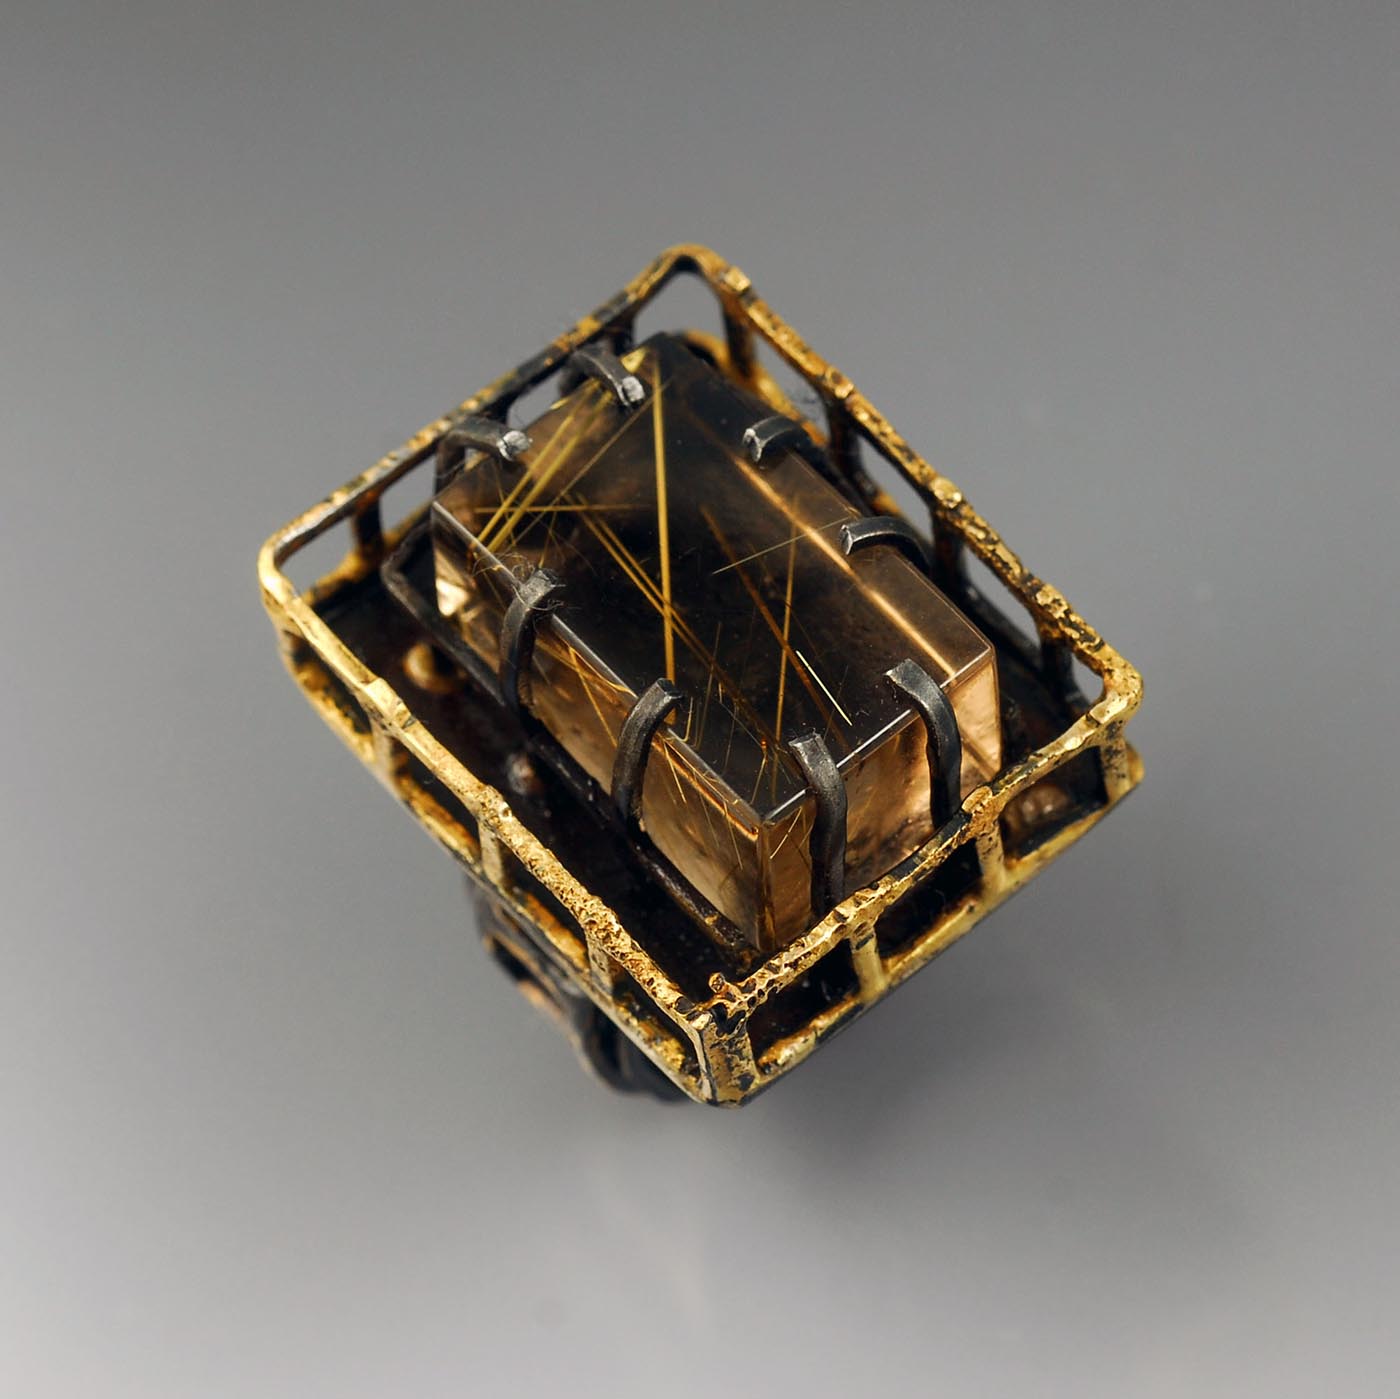 Veracity Ring by artisan jeweler Bette Barnett